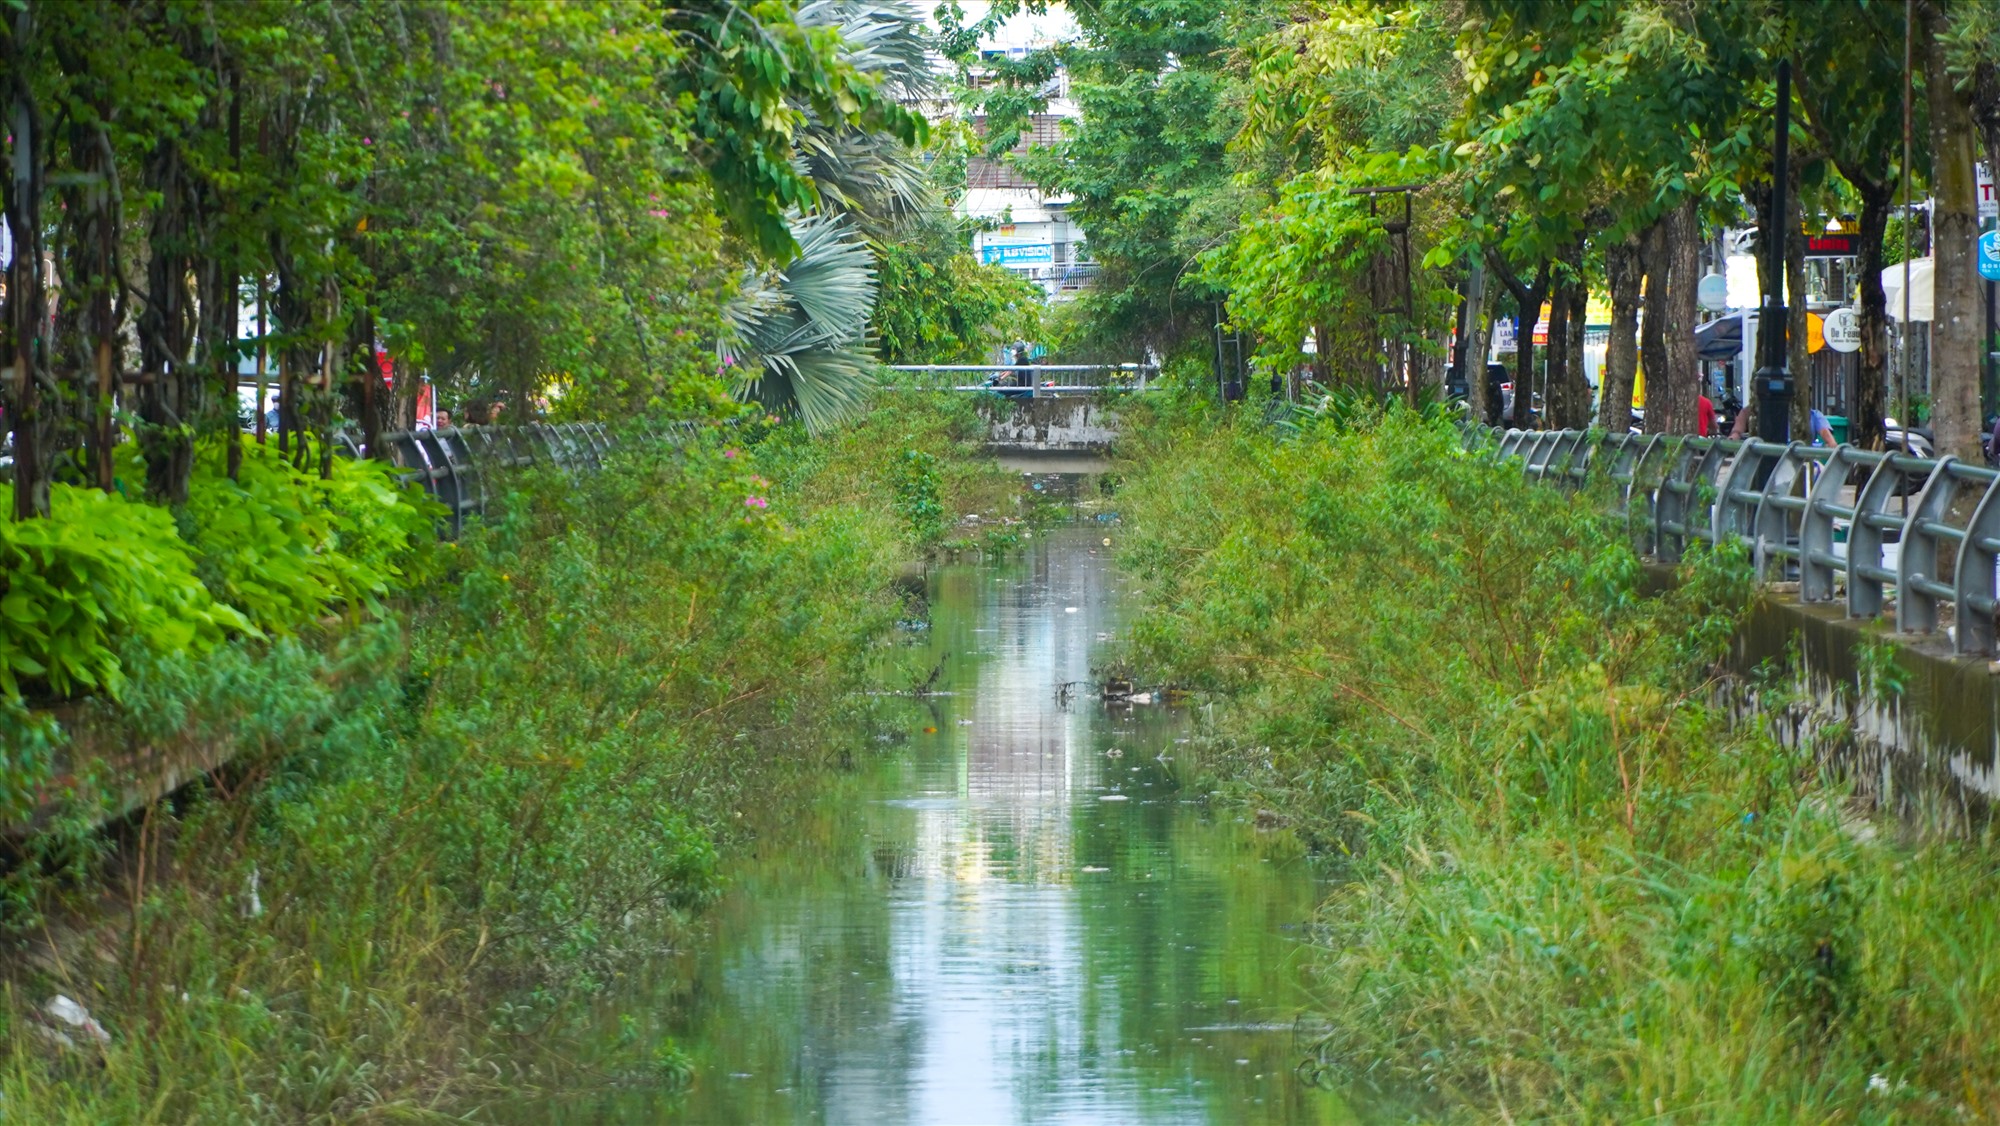 Nhưng hiện nay, các kênh, rạch, hồ trên địa bàn TP Cần Thơ đang bị ô nhiễm, ảnh hưởng tiêu cực đến đời sống của người dân cũng như sự phát triển du lịch của thành phố.